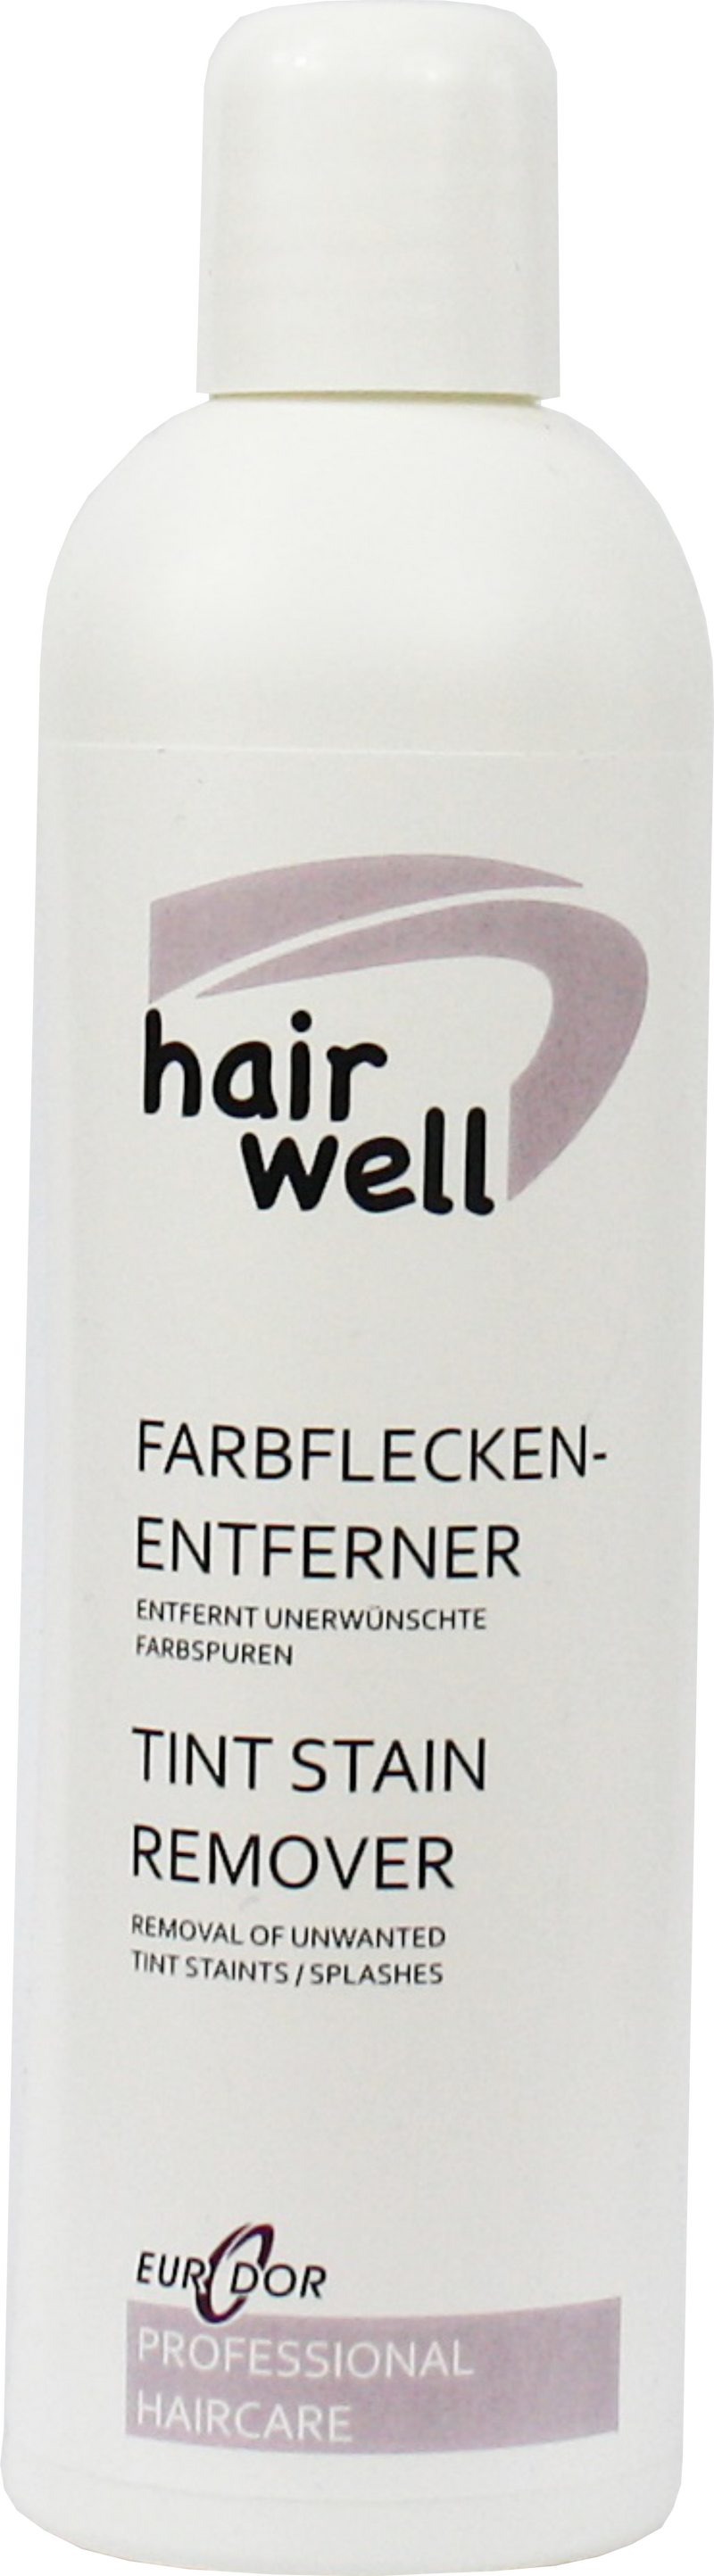 Hairwell Farbfleckenentferner